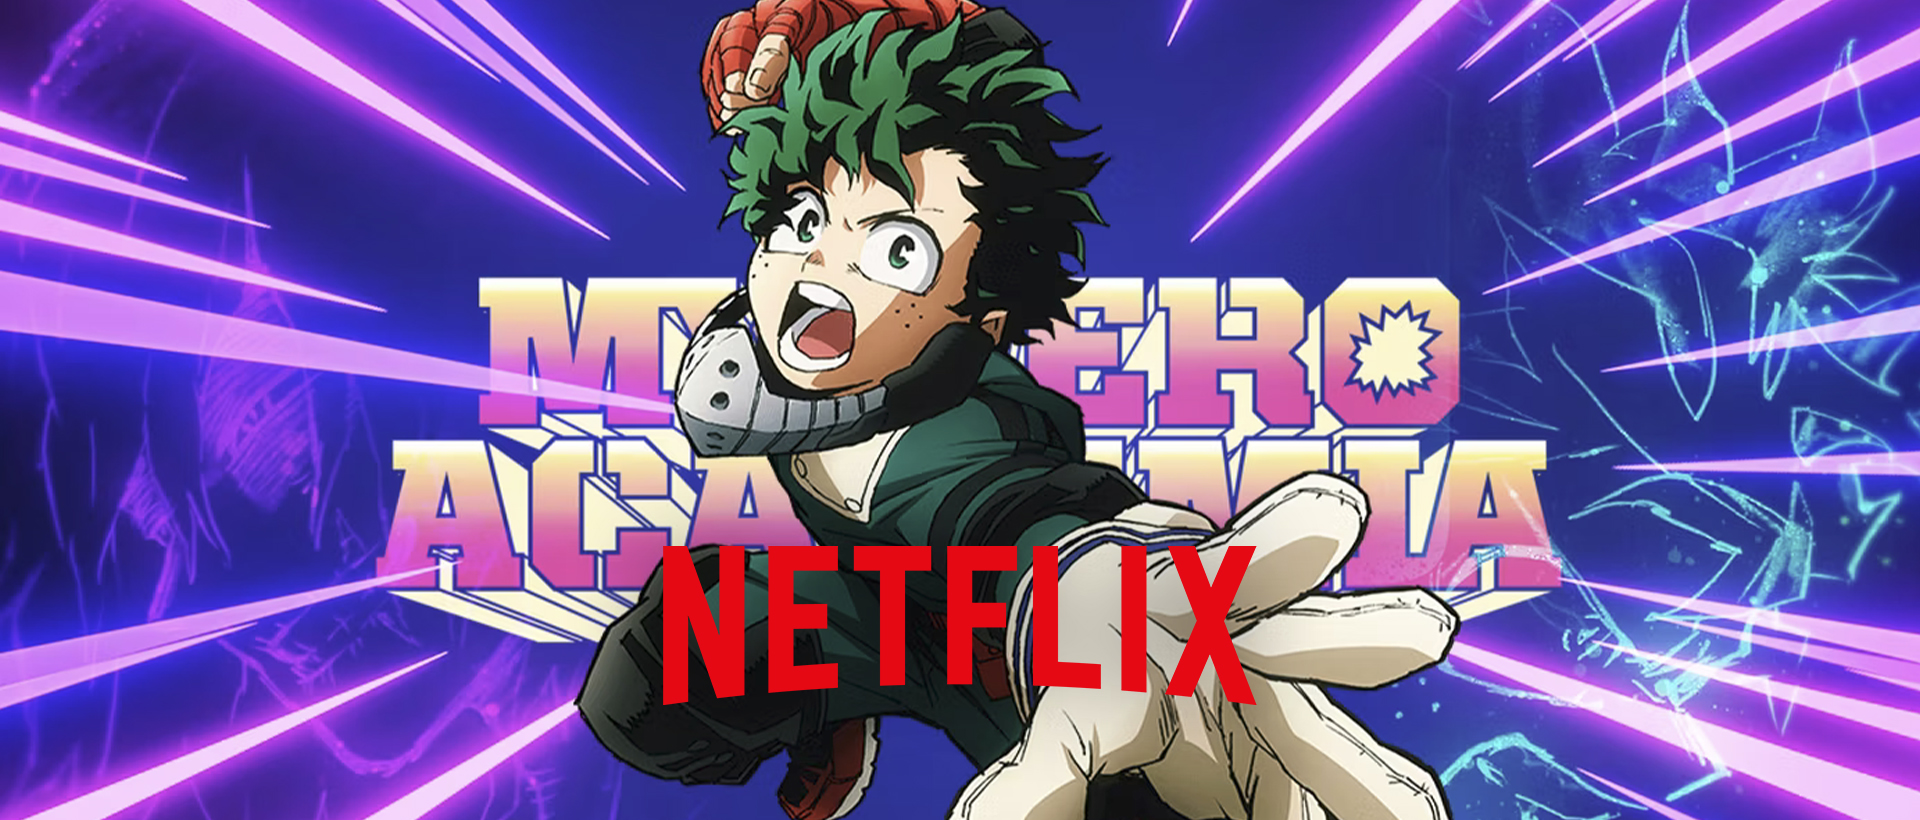 My Hero Academia netflix anime banner